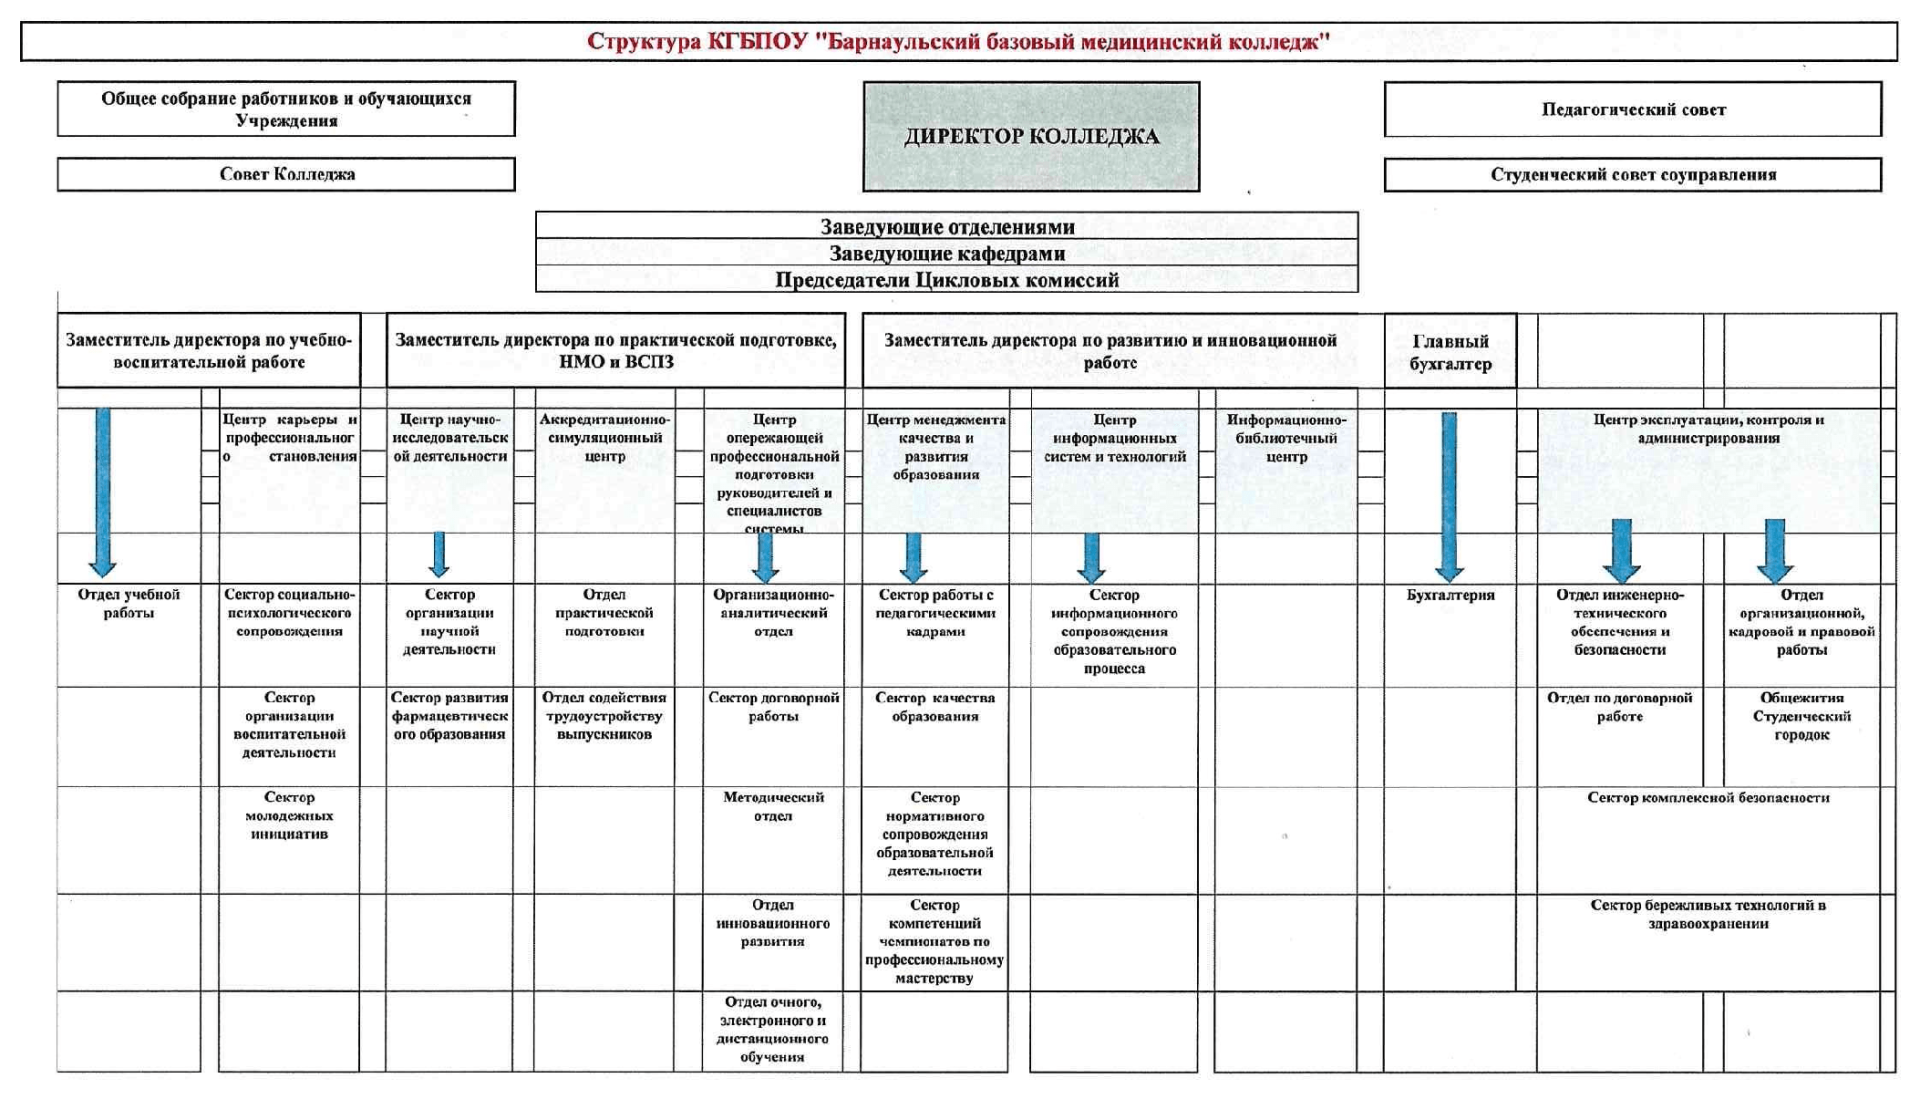 Схема структуры управления КГБПОУ "Барнаульский базовый медицинский колледж" содержит коллегиальные органы управления и названия структурных подразделений